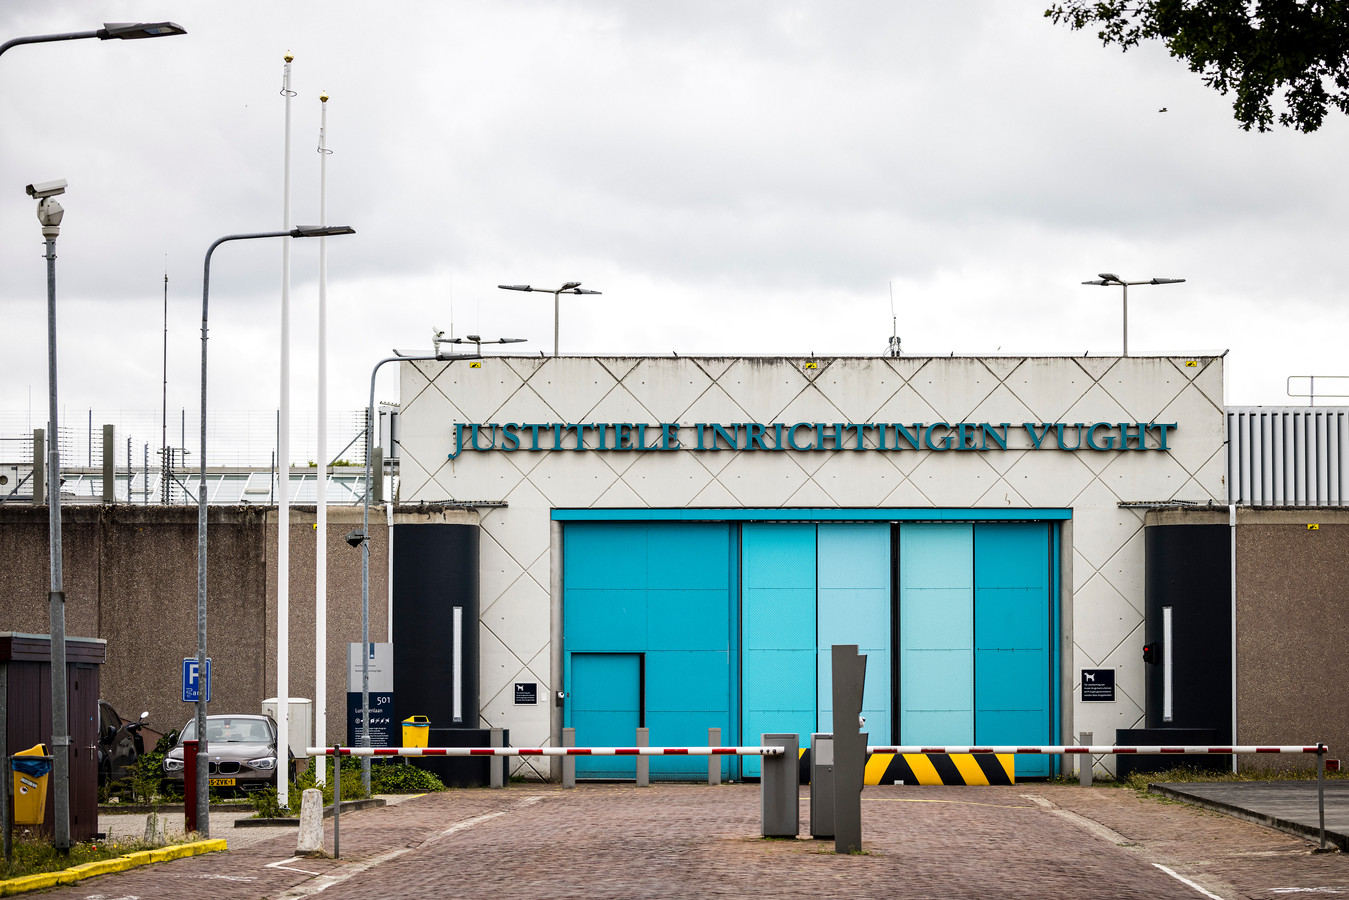 De gevangenis in Vught. Het complex beslaat 30 hectare. In een deel ervan, de extra beveiligde inrichting, zitten criminelen als Ridouan Taghi en Willem Holleeder gevangen.